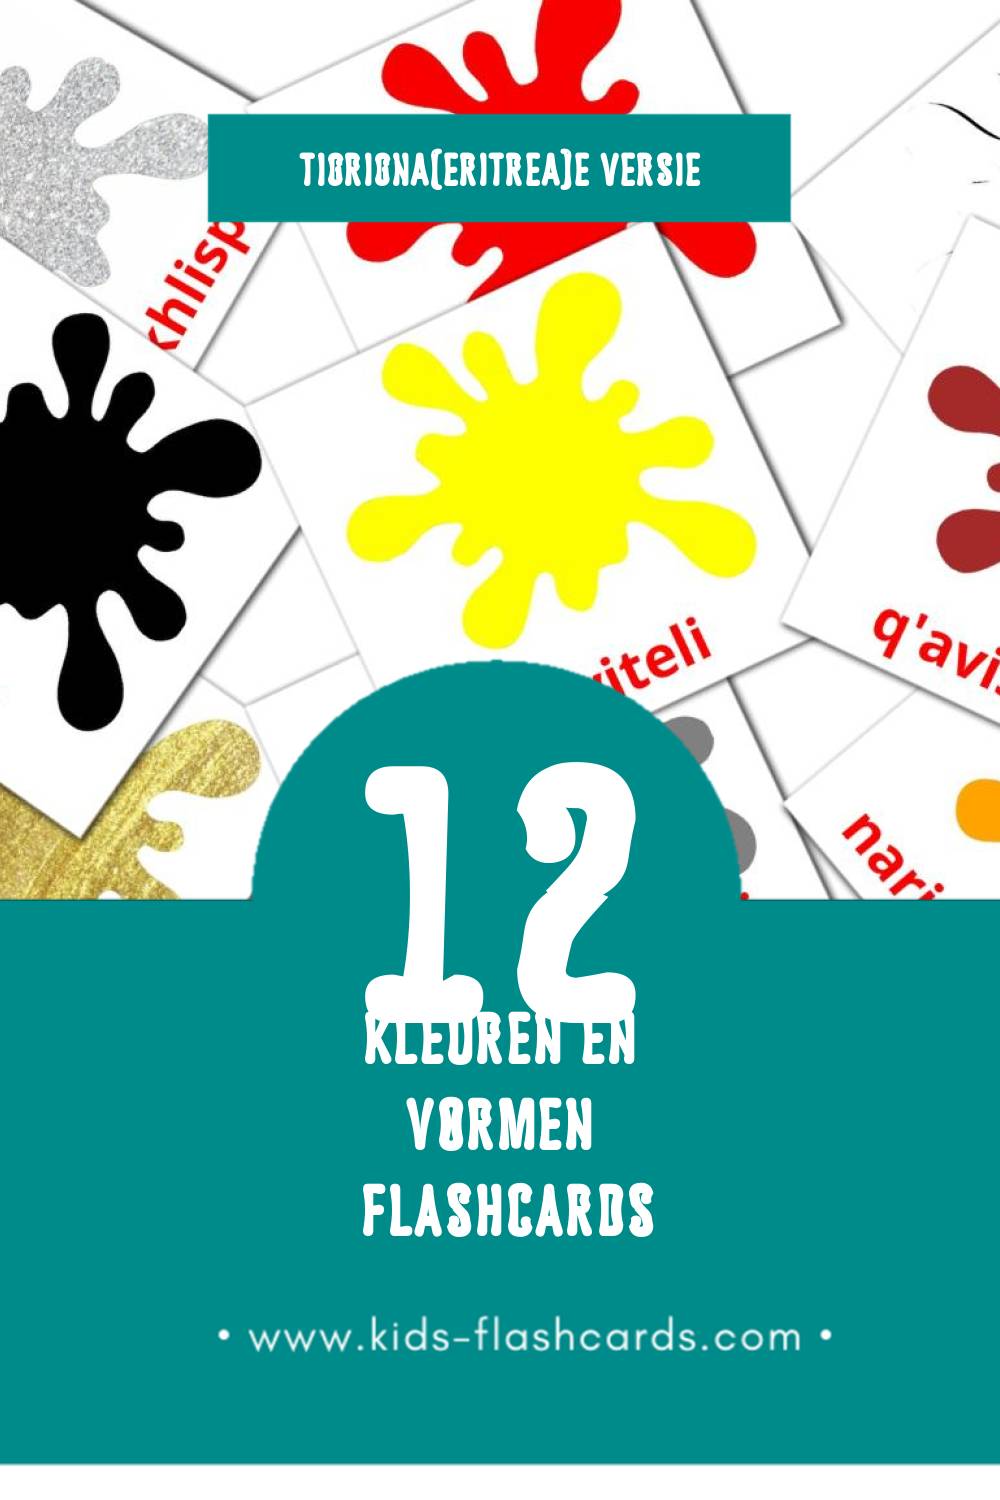 Visuele Perebi Flashcards voor Kleuters (12 kaarten in het Tigrigna(eritrea))